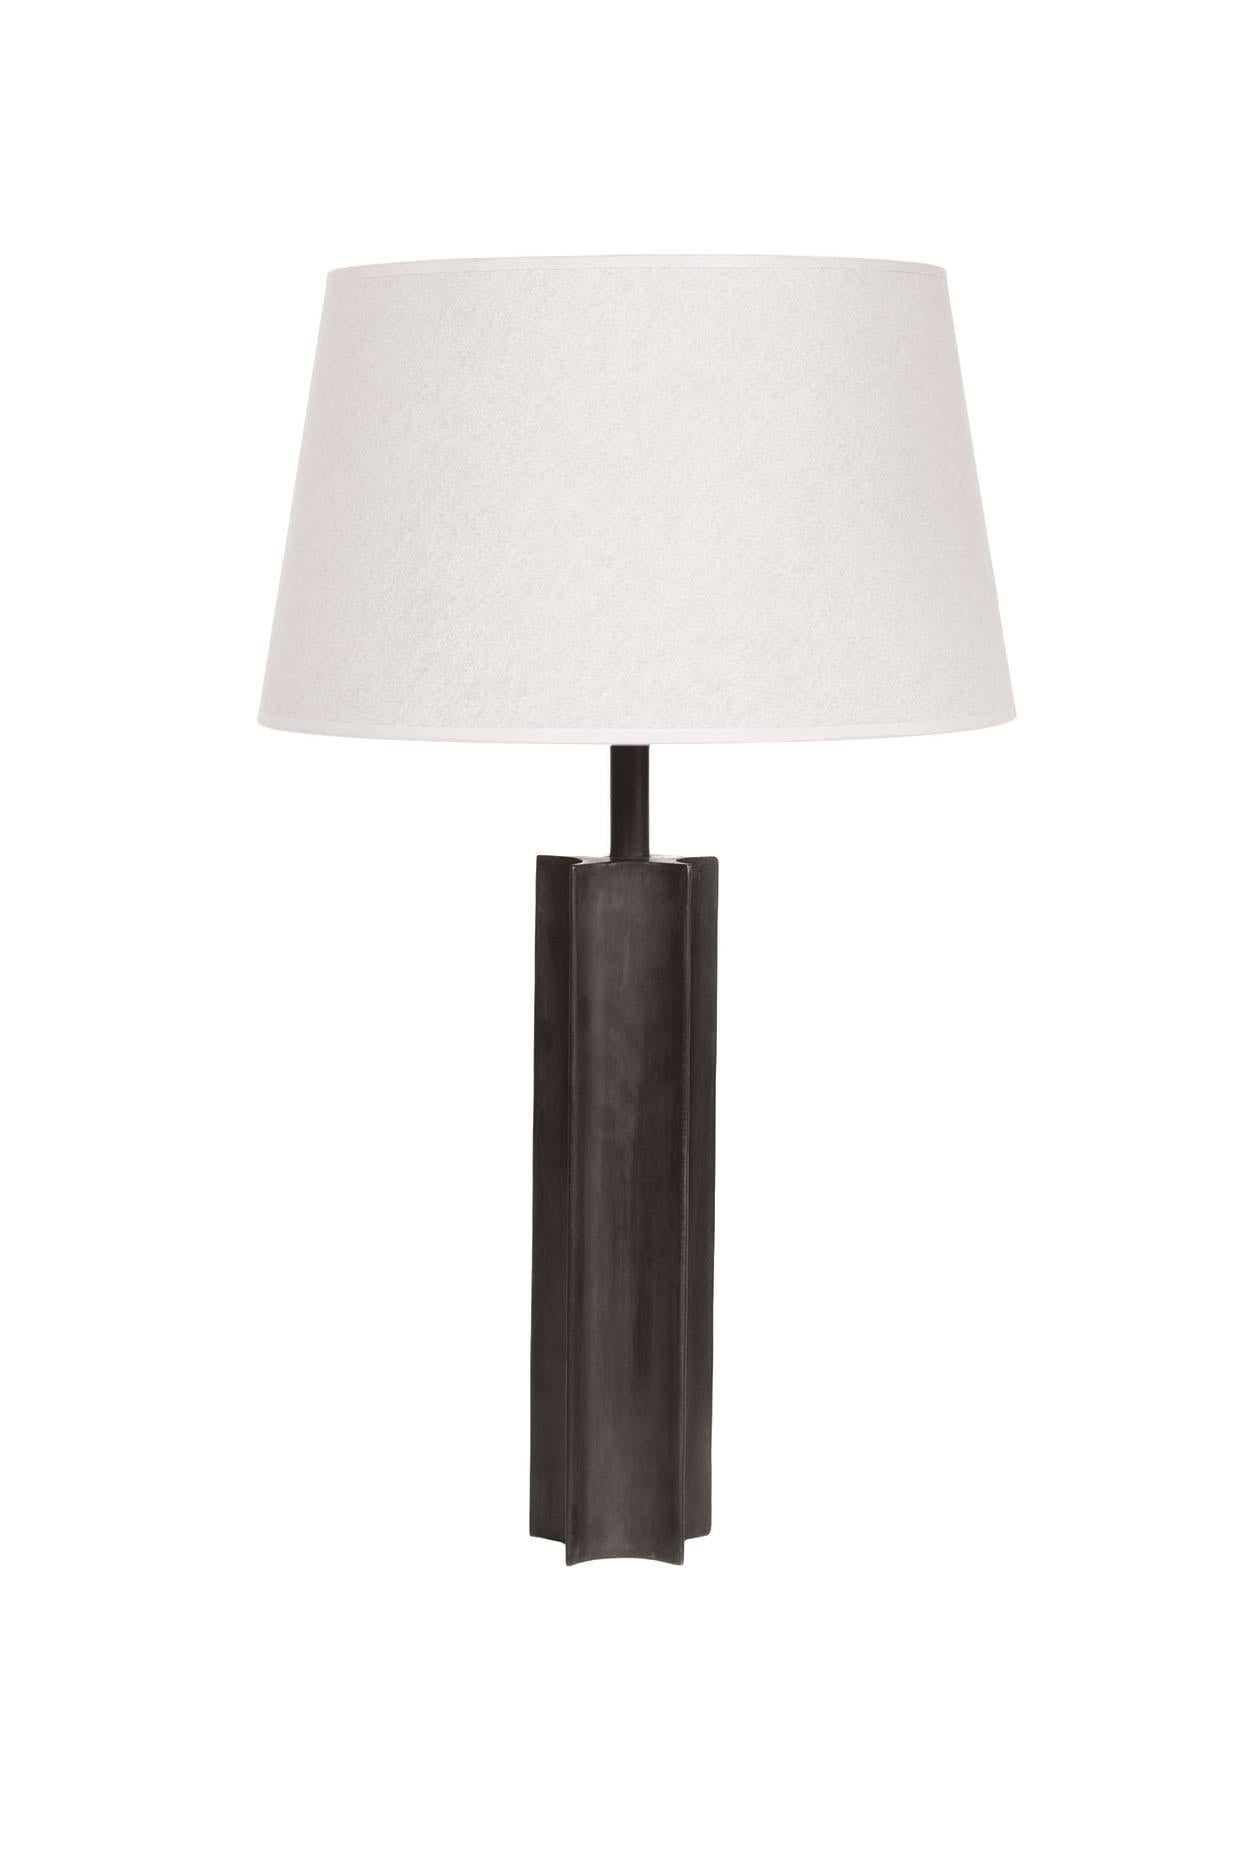 annabelle table lamp